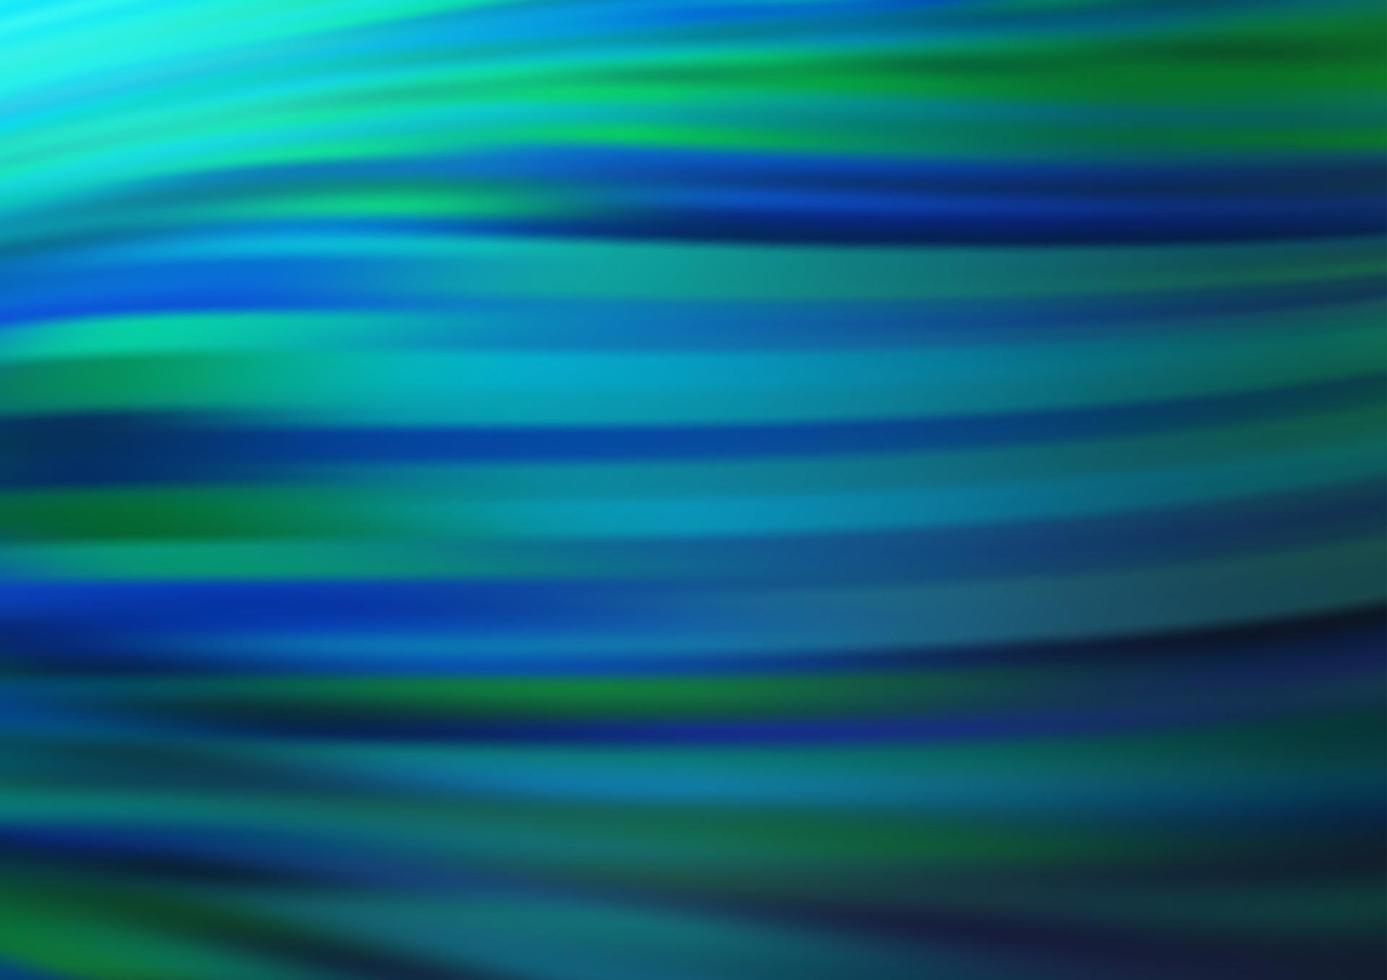 padrão de vetor azul escuro e verde com círculos curvos.